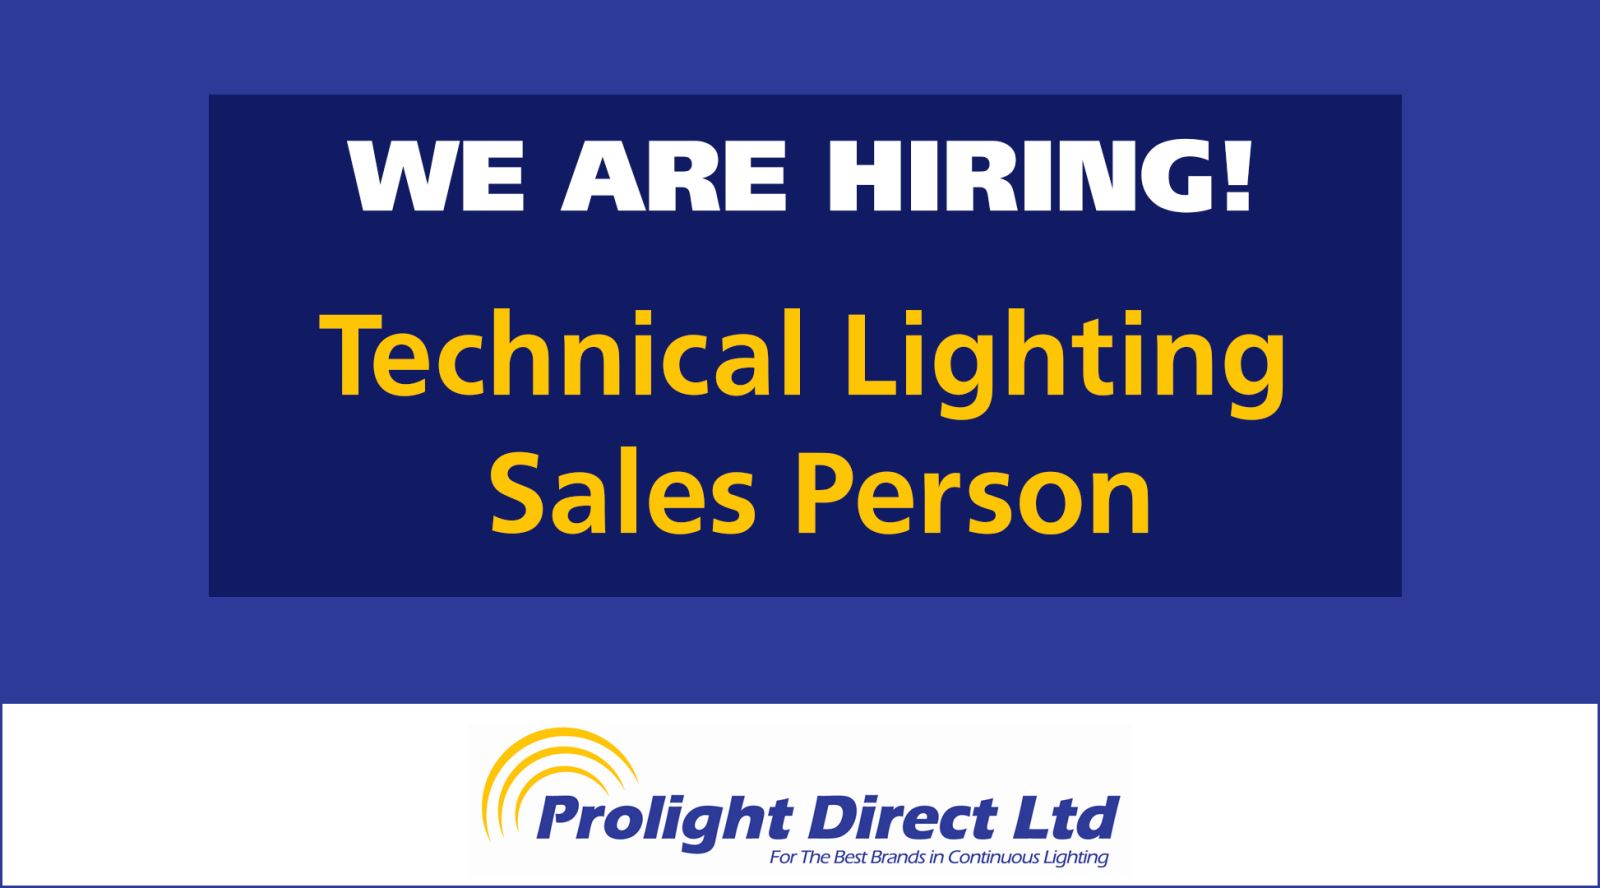 Prolight Direct Ltd Job Vacancy